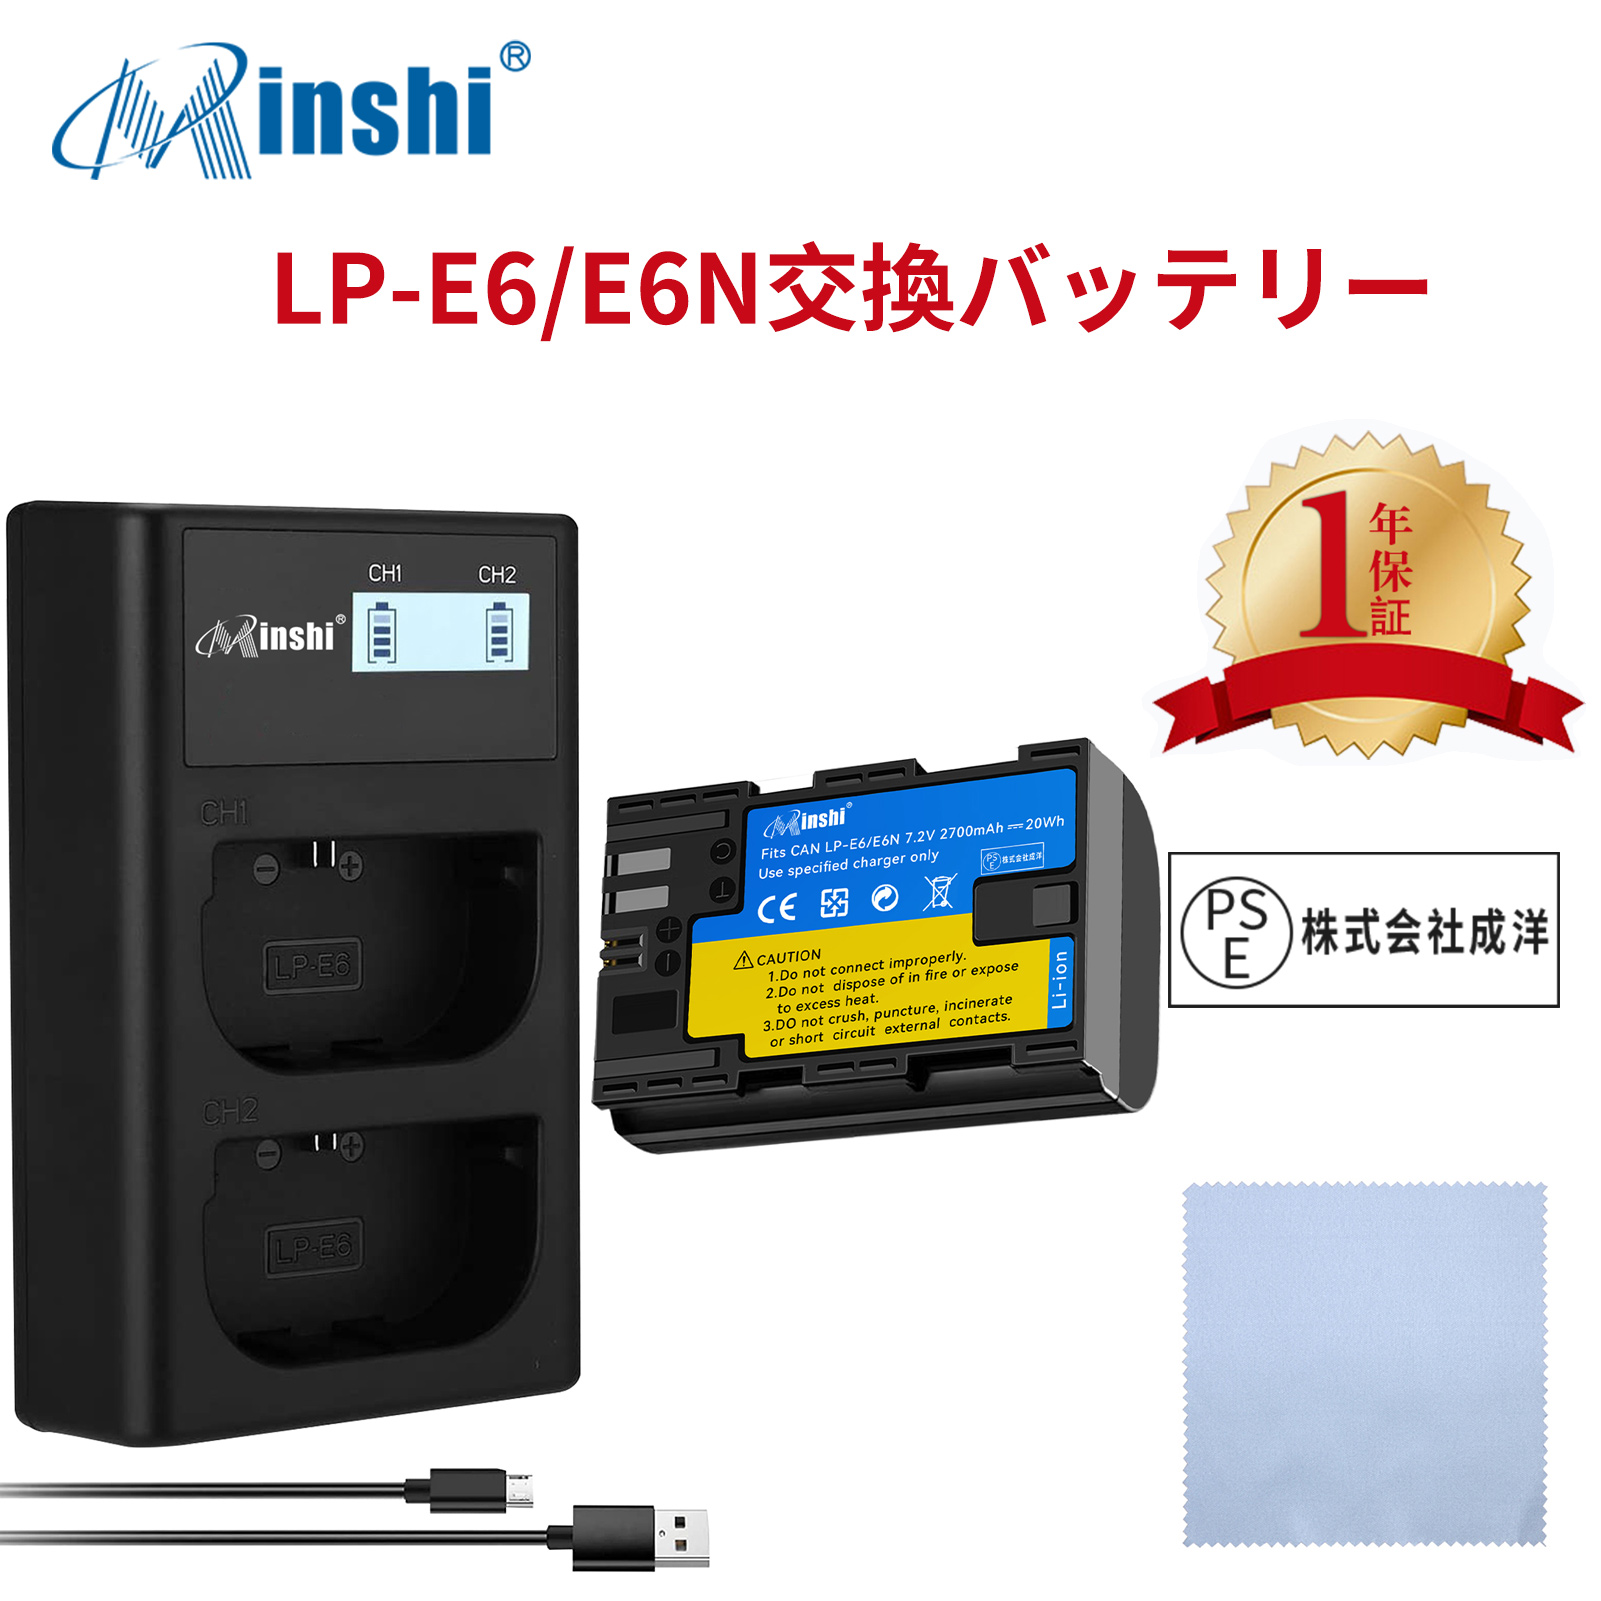 【セット】minshi Canon EOS 70D LP-E6 LP-E6N EOS6D CANON 80D 【2700mAh 7.2V】高品質 LP-E6NH 交換用バッテリー